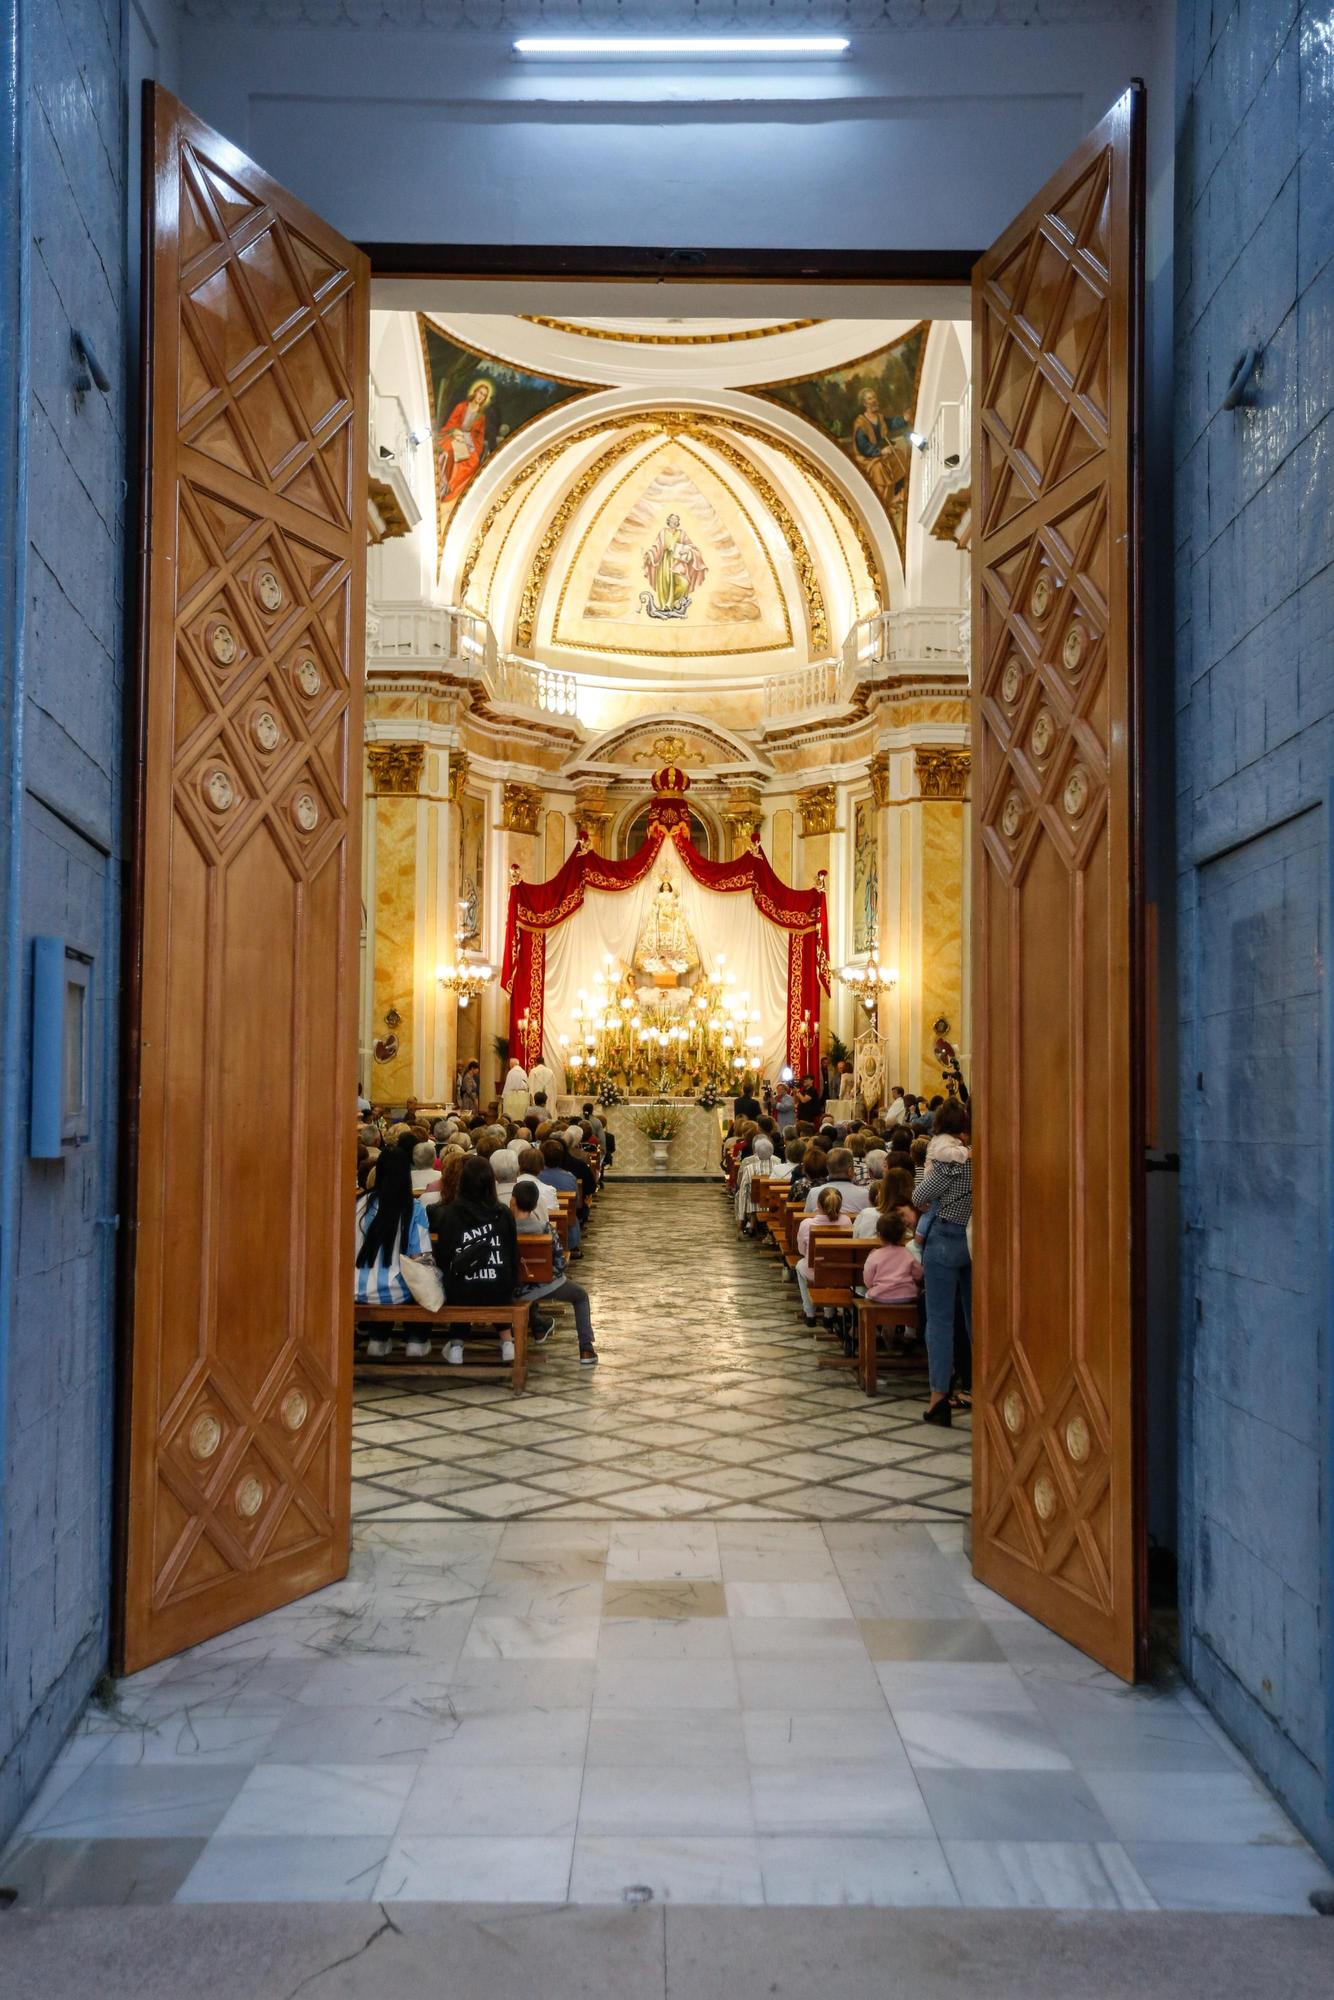 Puertas abiertas de par en par en la iglesia de San Bartolomé con un deseo de hermandad.